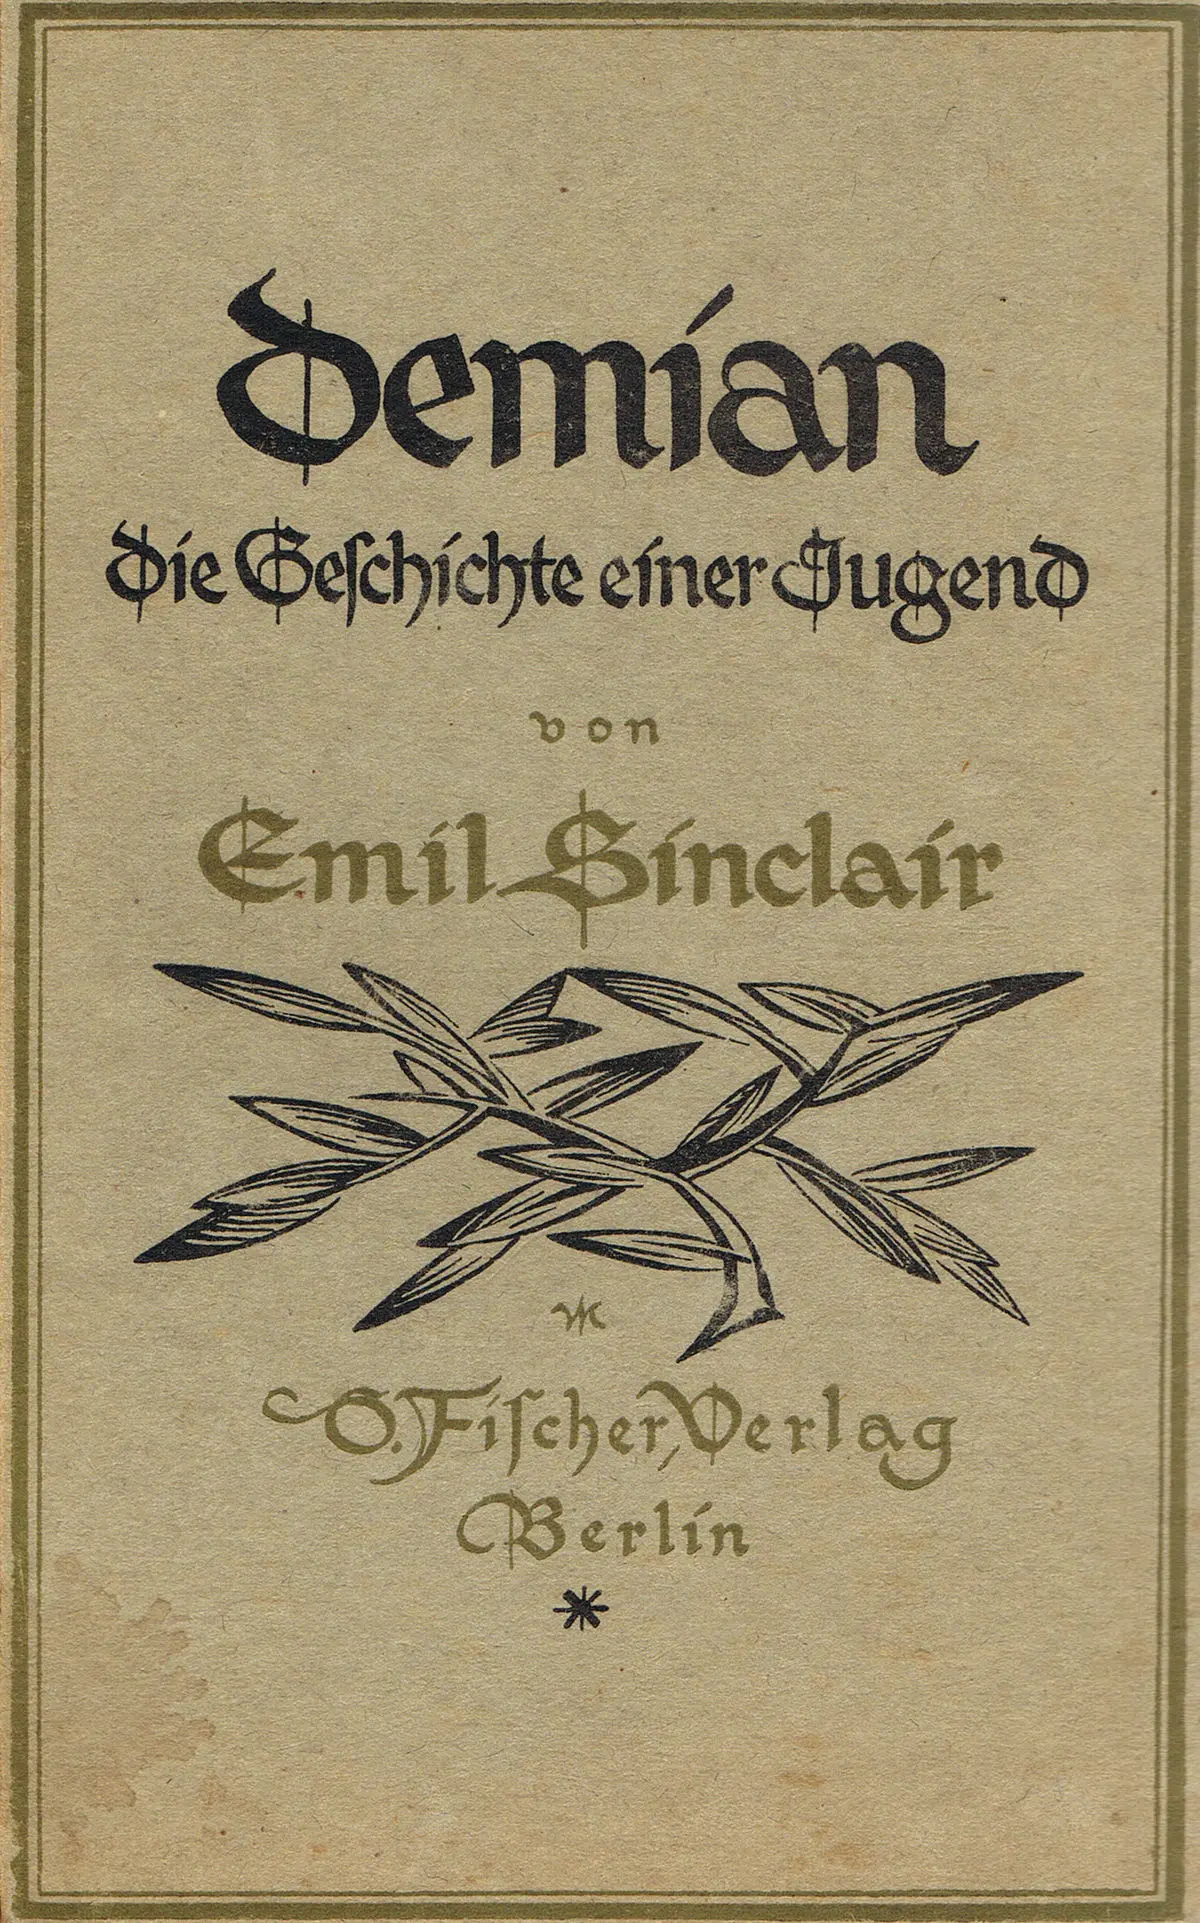 resumen del libro demian de hermann hesse - Qué tipo de literatura es Demian